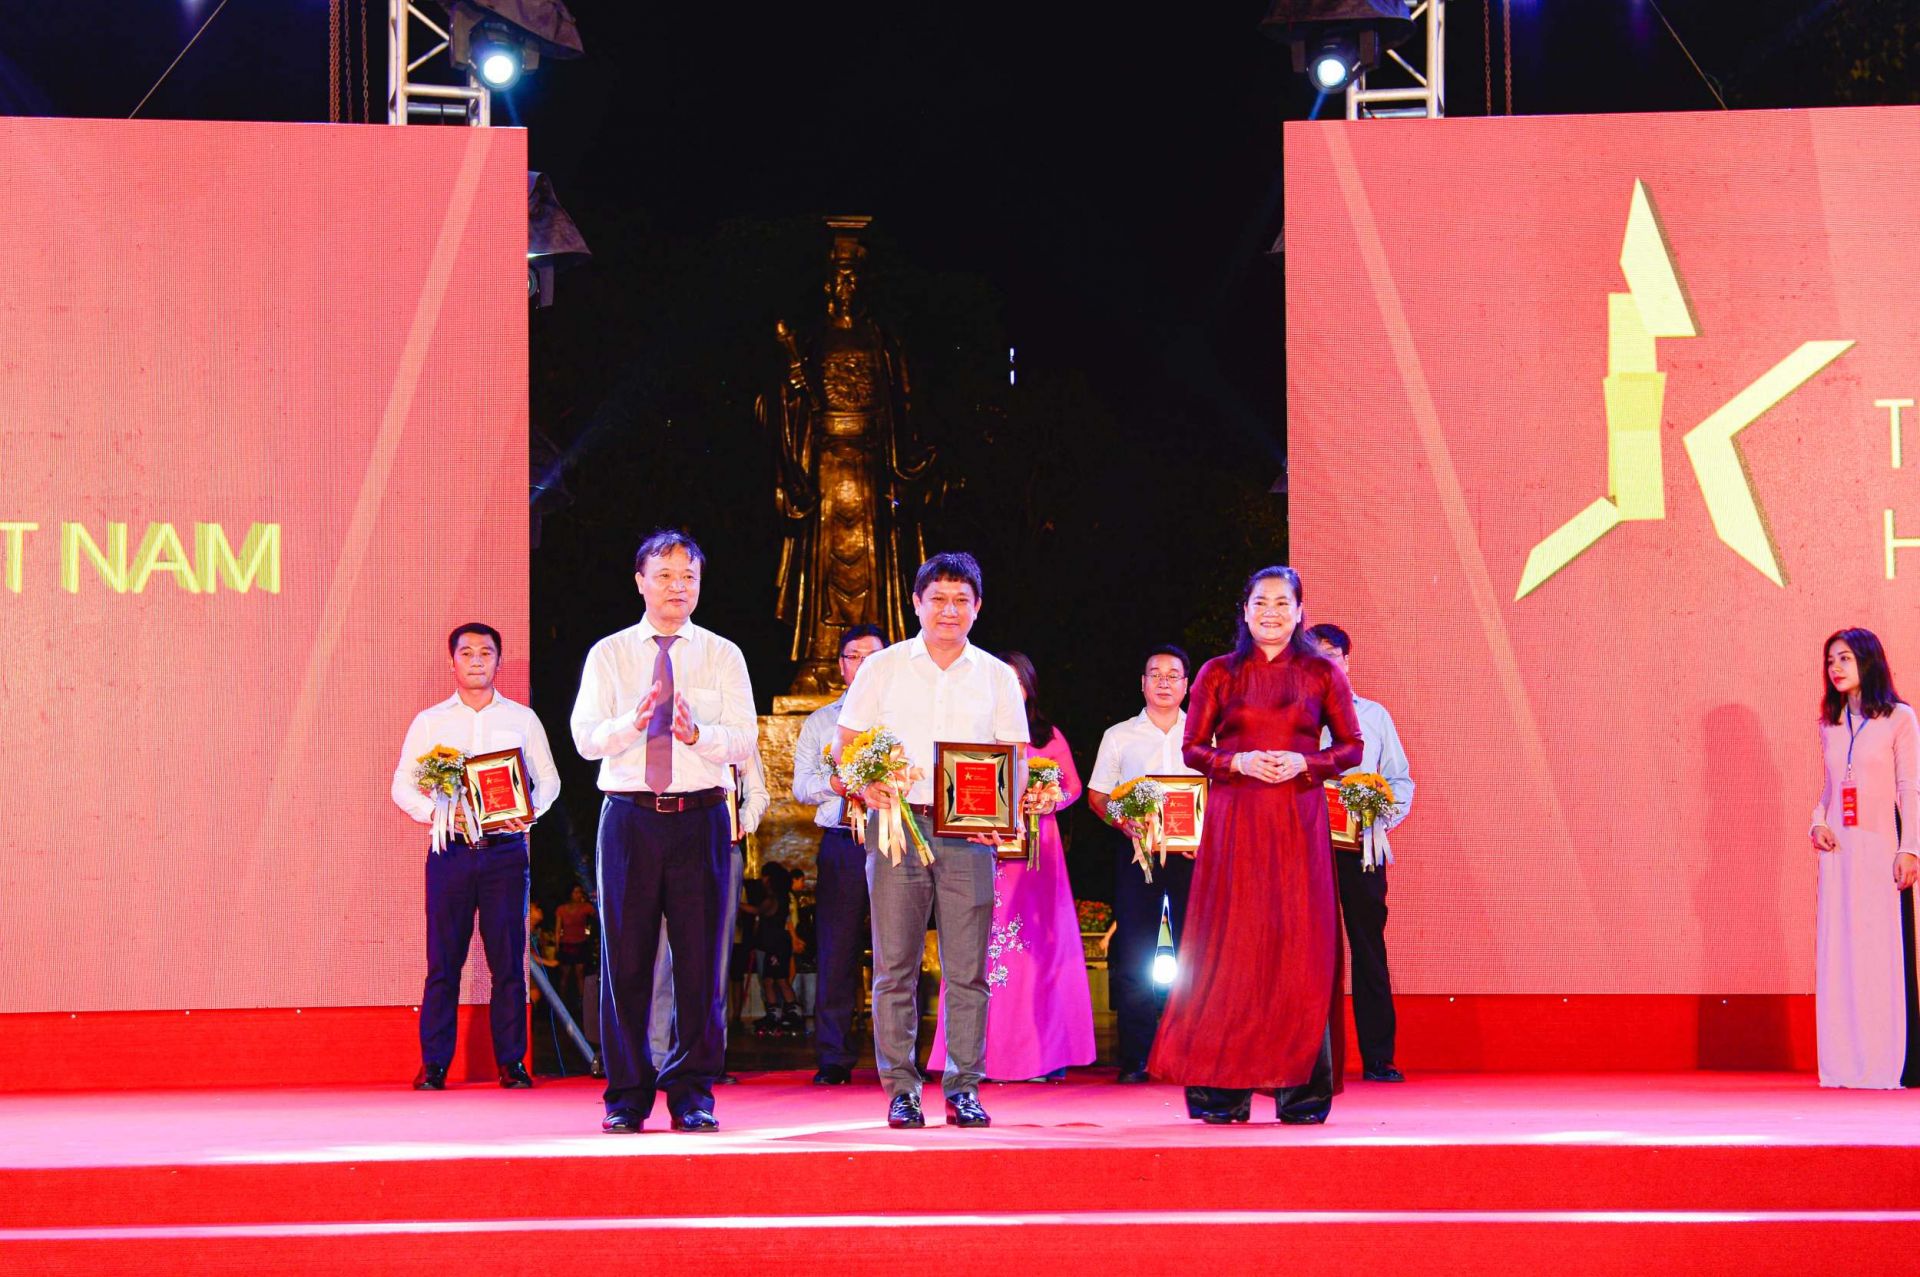 Thứ trưởng Bộ Công Thương Đỗ Thắng Hải (trái) và Phó Chủ tịch Hội Liên hiệp Phụ nữ Việt Nam Đỗ Thị Thu Thảo (phải) trao kỷ niệm chương cho đại diện Tổng Công ty Giấy Việt Nam